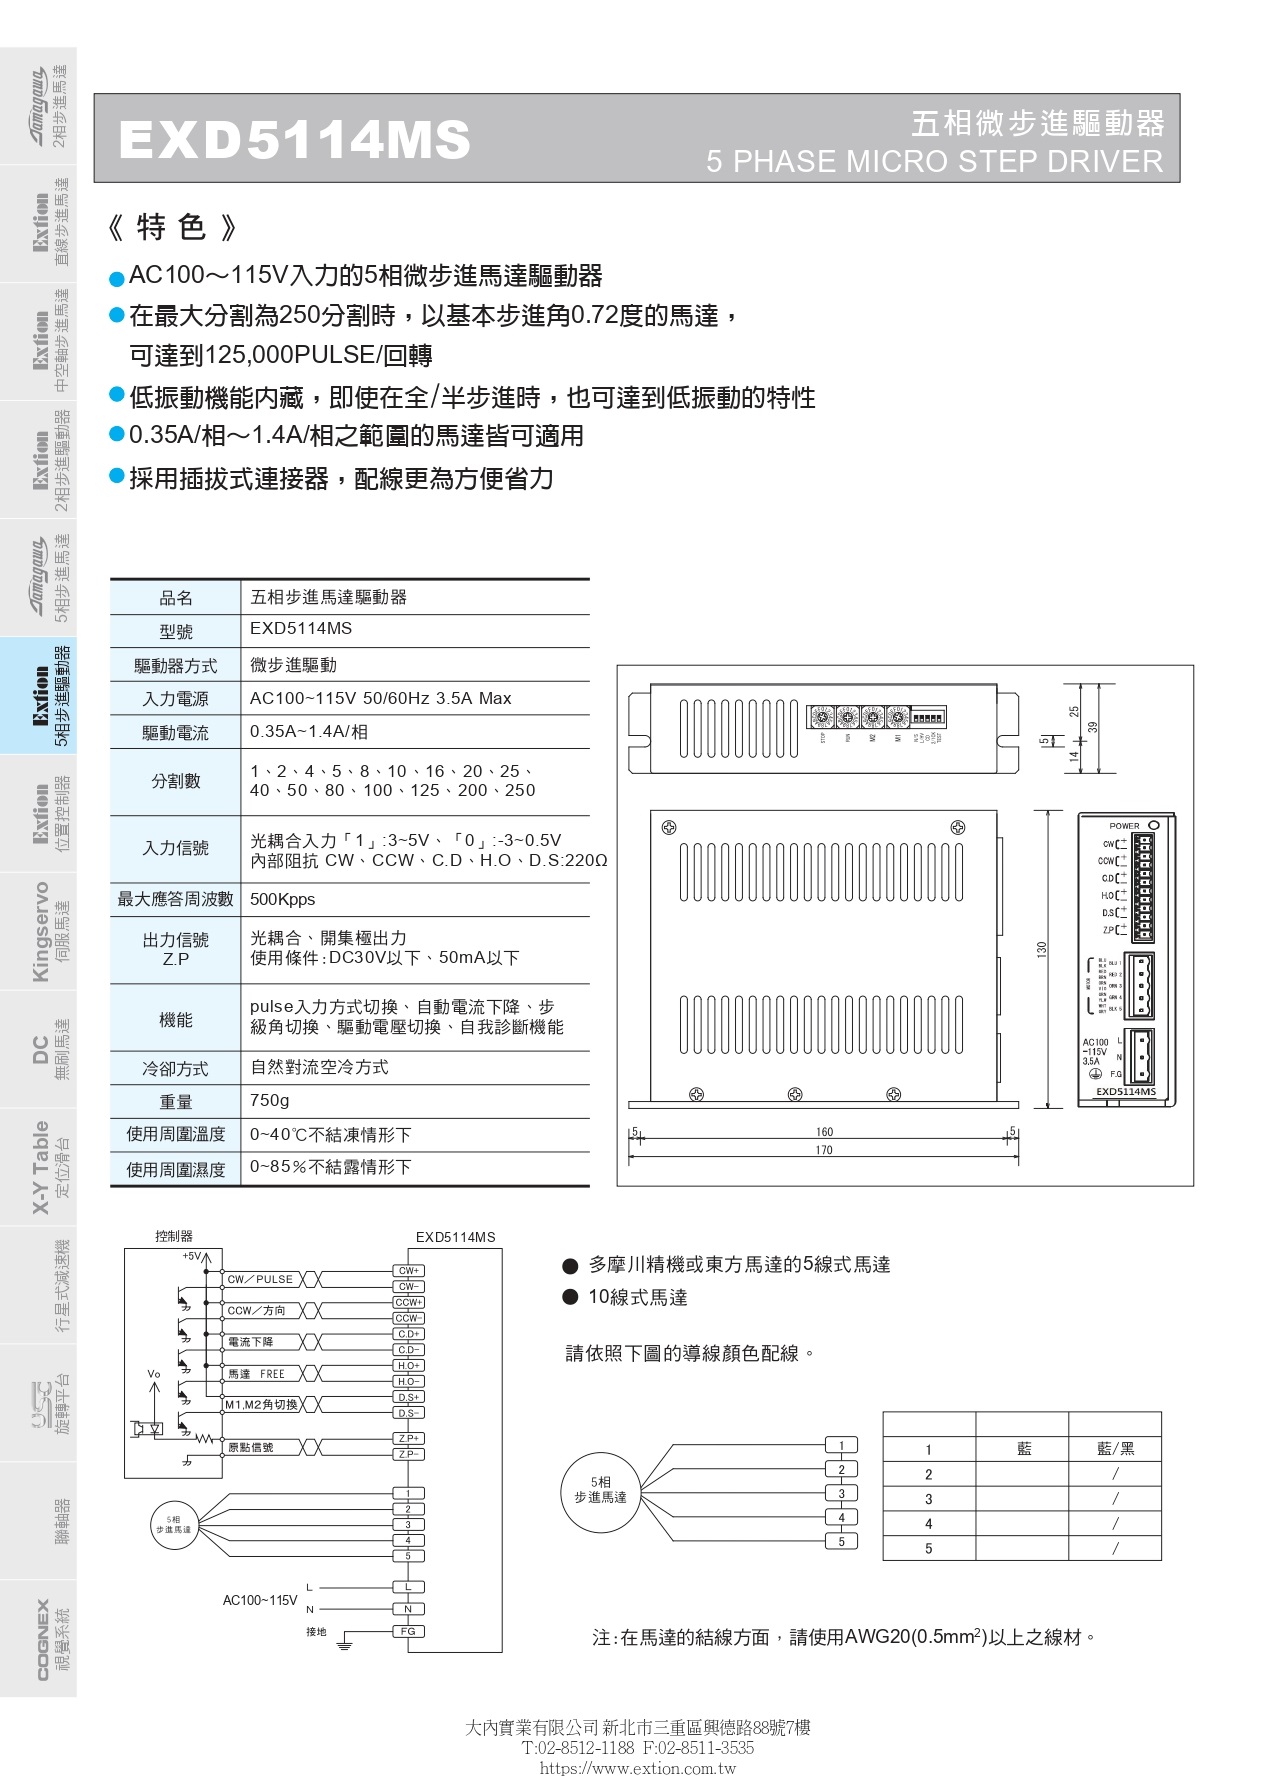 EXD5114MS五相微步進驅動器(2)_pages-to-jpg-0001